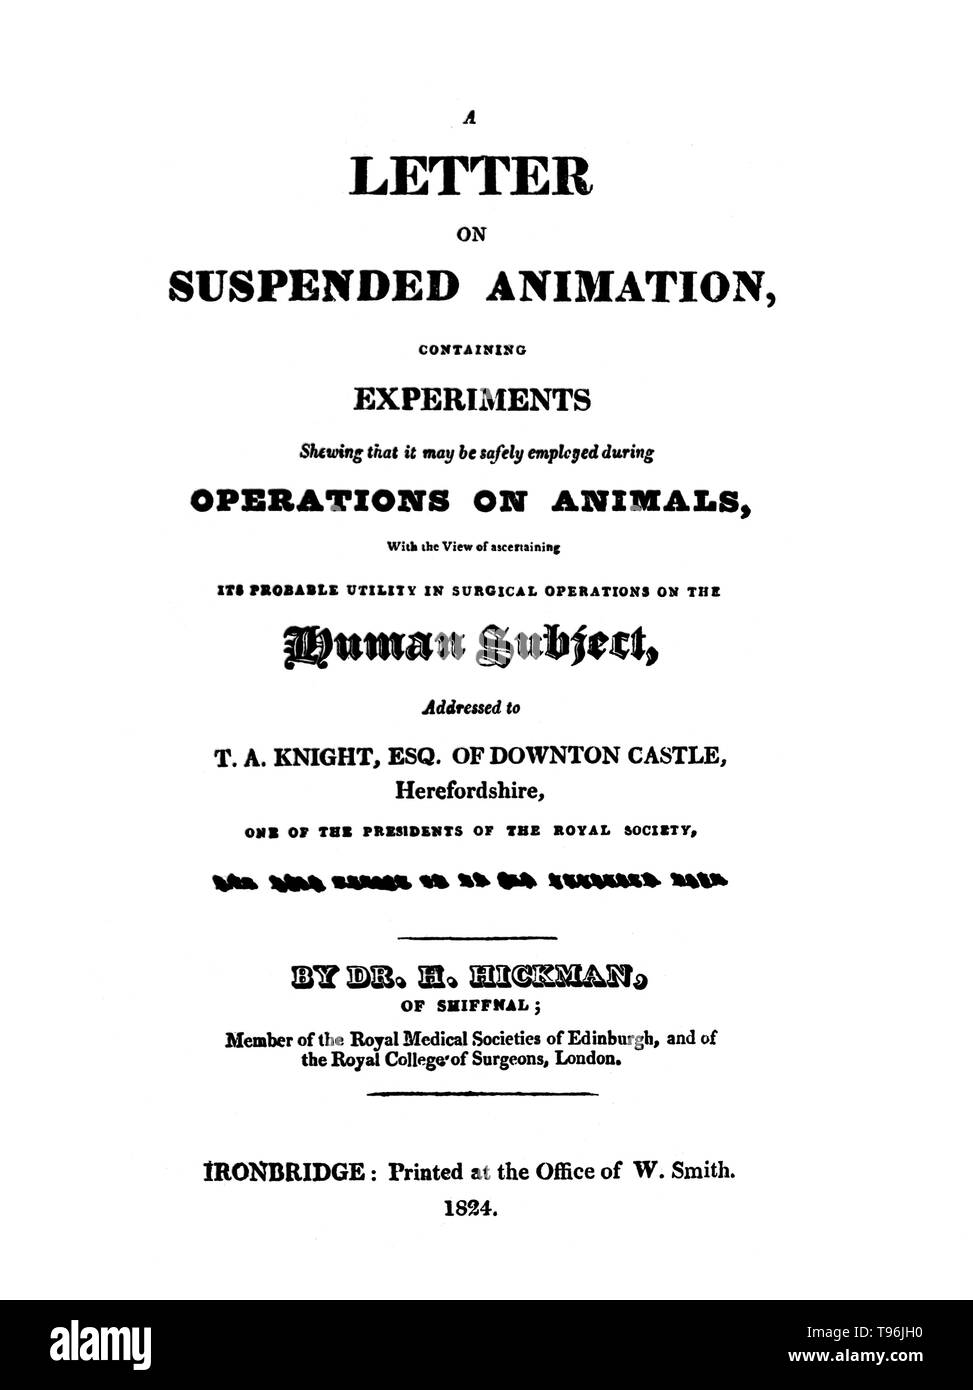 Henry Hill Hickman (27 janvier 1800 - 2 Avril, 1830) était un médecin anglais et promoteur de l'anesthésie. Il a commencé sa formation médicale à l'École de médecine d'Édimbourg âgés de 16 ans et laissé sans diplôme, ce qui était normal à l'époque. Il a été admis comme membre du Collège royal des chirurgiens de Londres en 1820.Après les qualifications, il a commencé sa carrière médicale en 1821, et au début de 1823, il a commencé des expériences sur animaux horribles en anesthésie. Banque D'Images